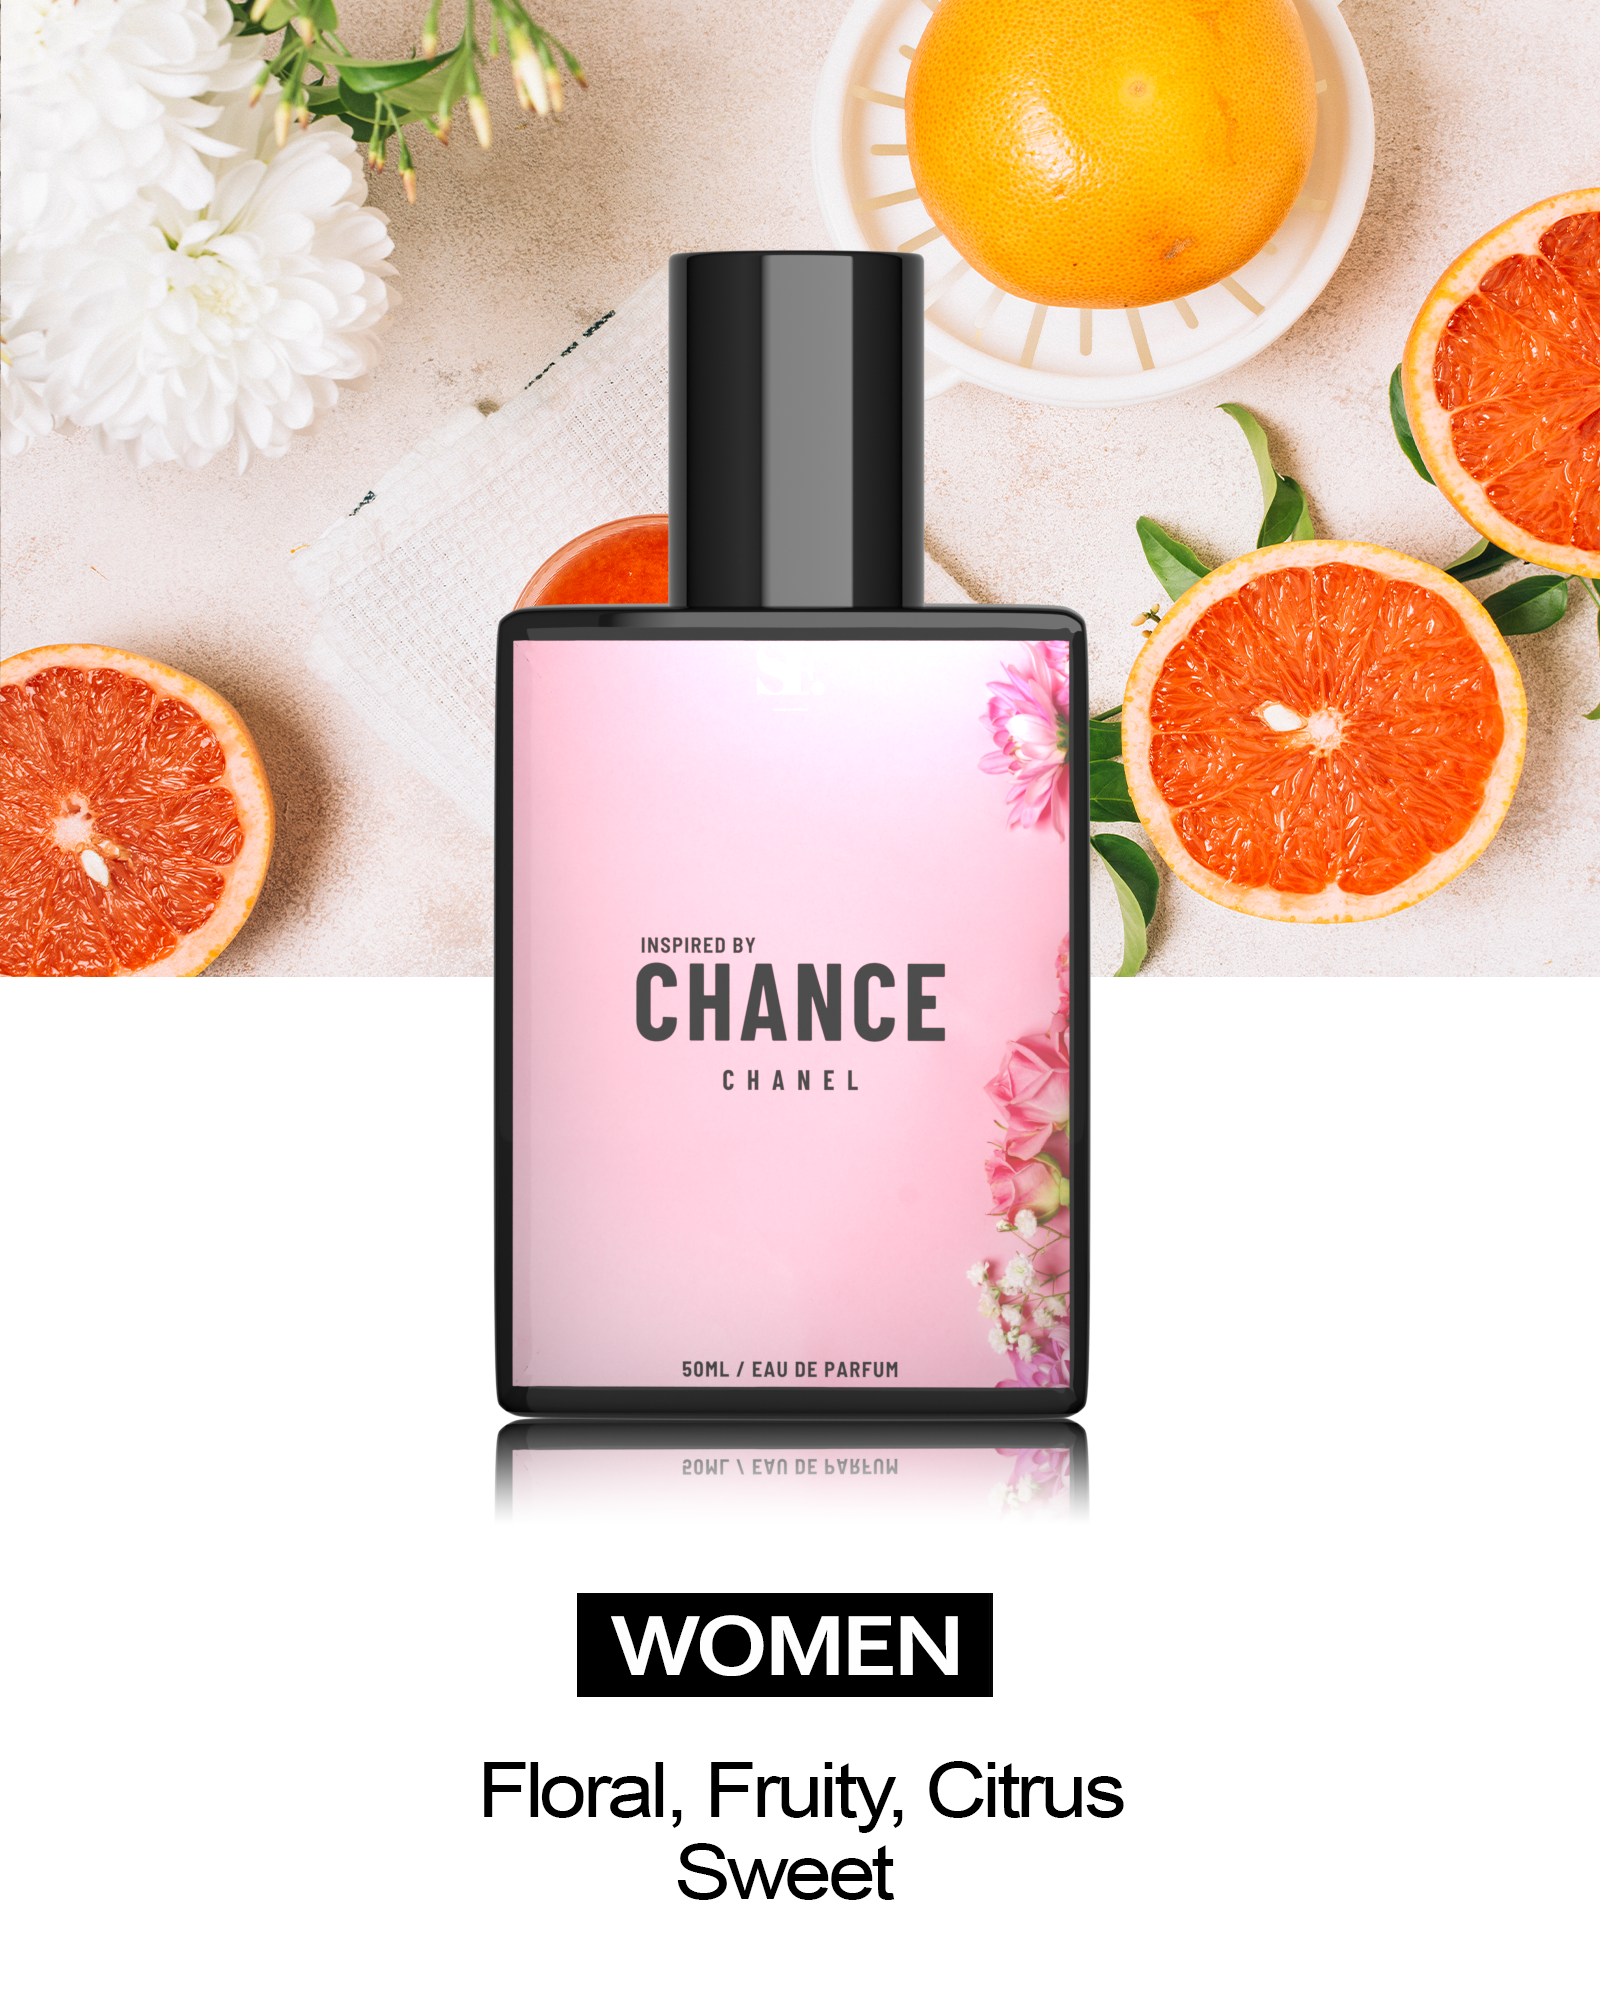 Floral Grapefruit Inspired By Chanel's Chance Eau Tendre Eau De